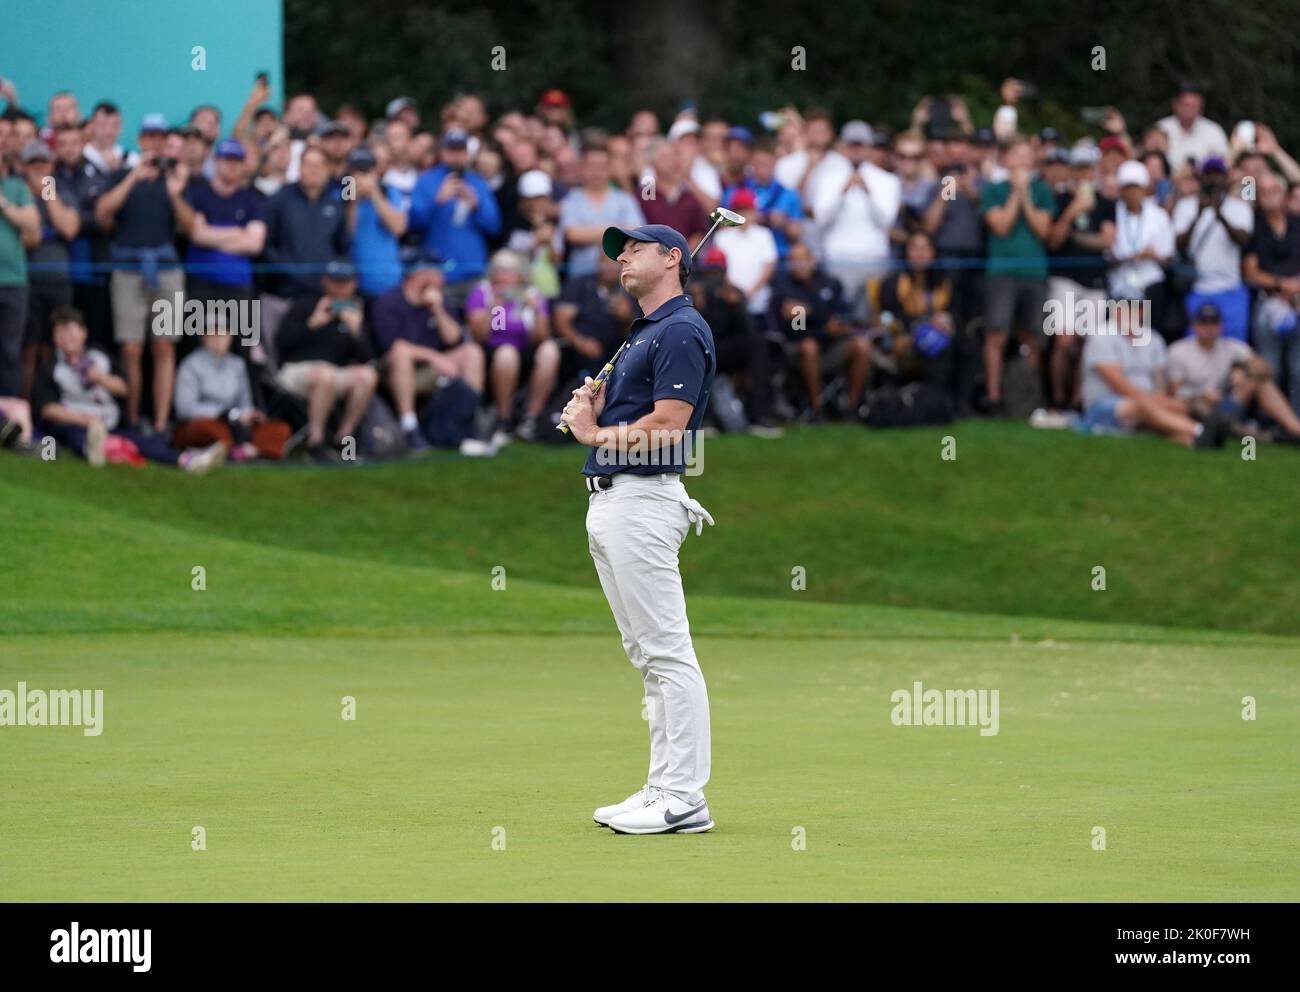 Rory McIlroy reagiert, nachdem er am vierten Tag der BMW PGA Championship im Wentworth Golf Club, Virginia Water, einen Play-off-Putt auf dem 18. Green knapp verpasst hatte. Bilddatum: Sonntag, 11. September 2022. Stockfoto